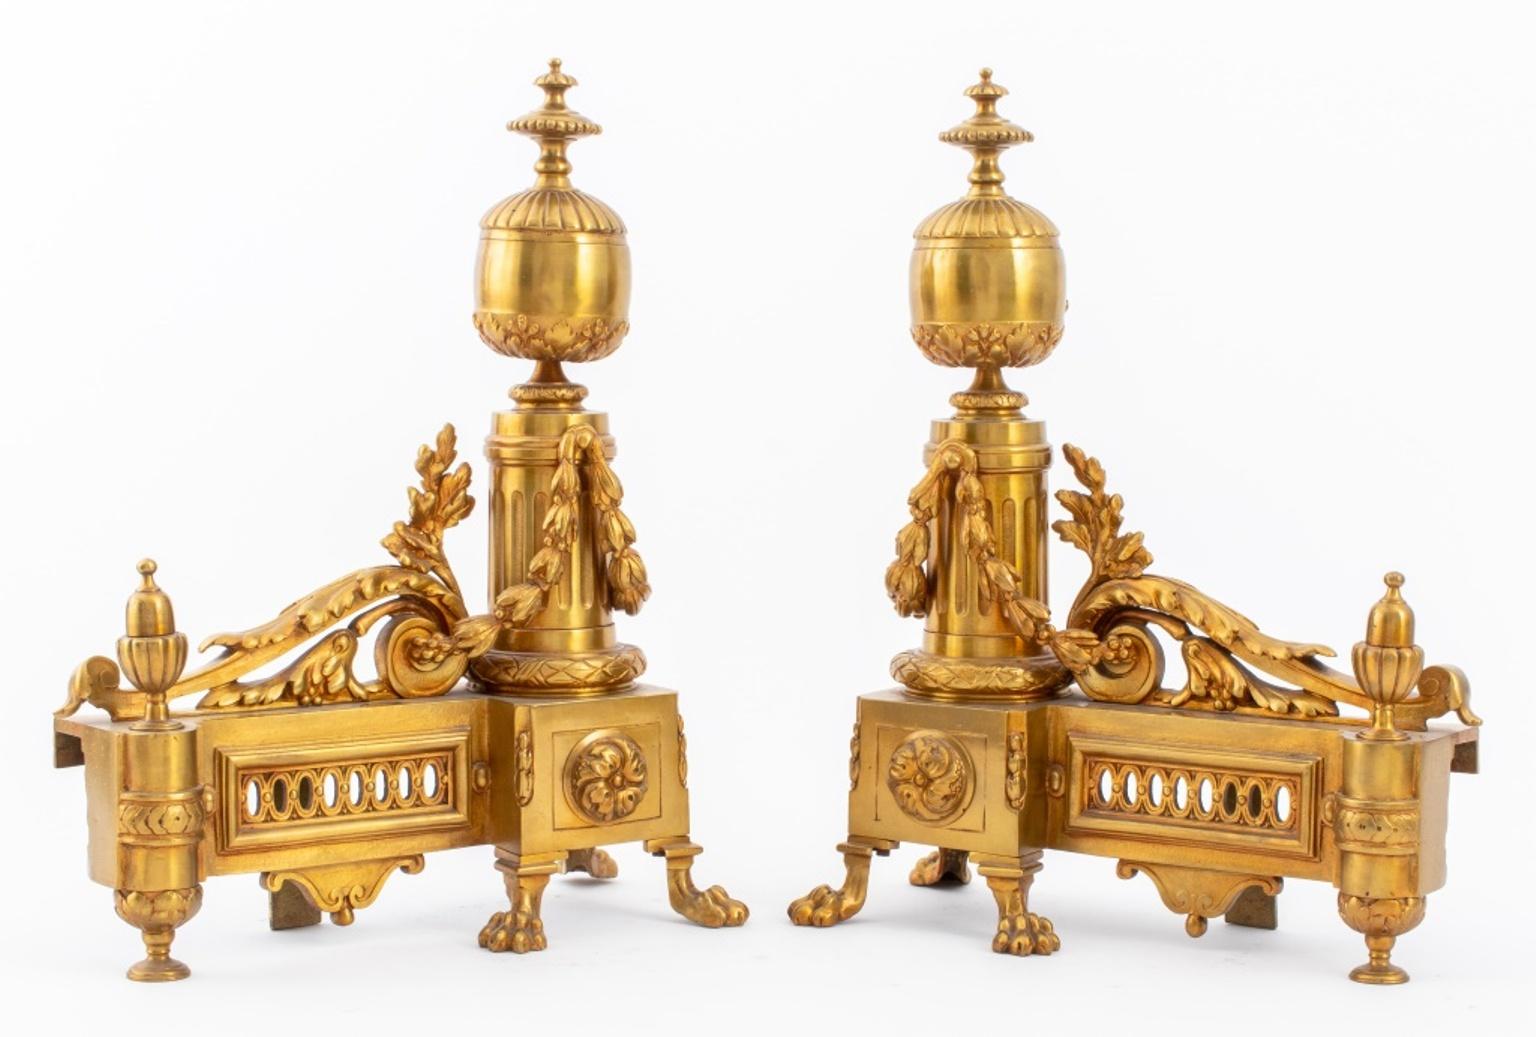 Paire de chenets en bronze doré de style Louis XVI, à décor de rinceaux et de fleurons, chacun reposant sur quatre pieds pattes.

Dimensions : Chacune : 14,25